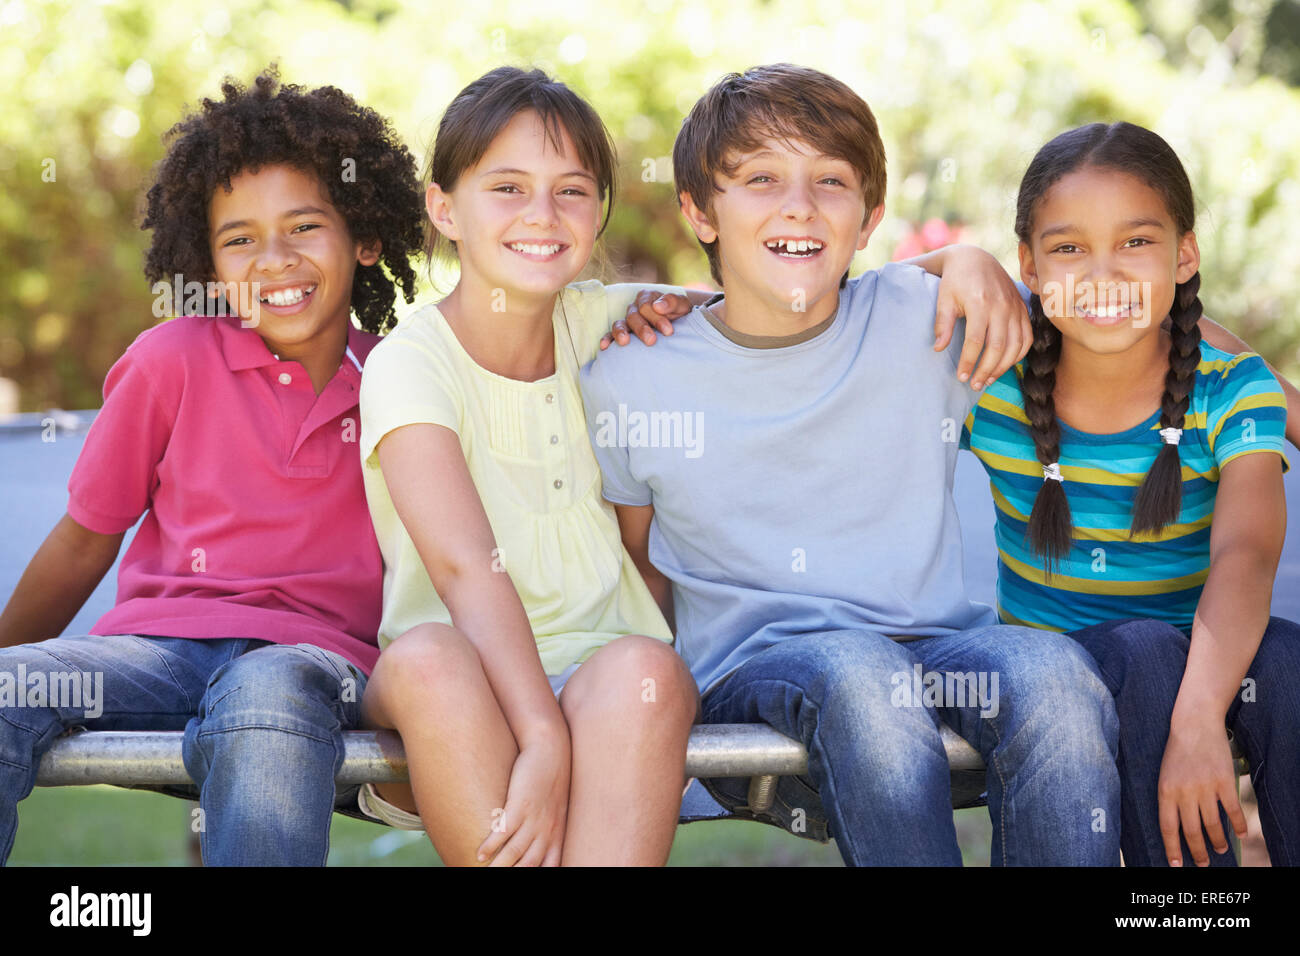 Gruppe von Kindern zusammensitzen am Rand des Trampolin Stockfoto